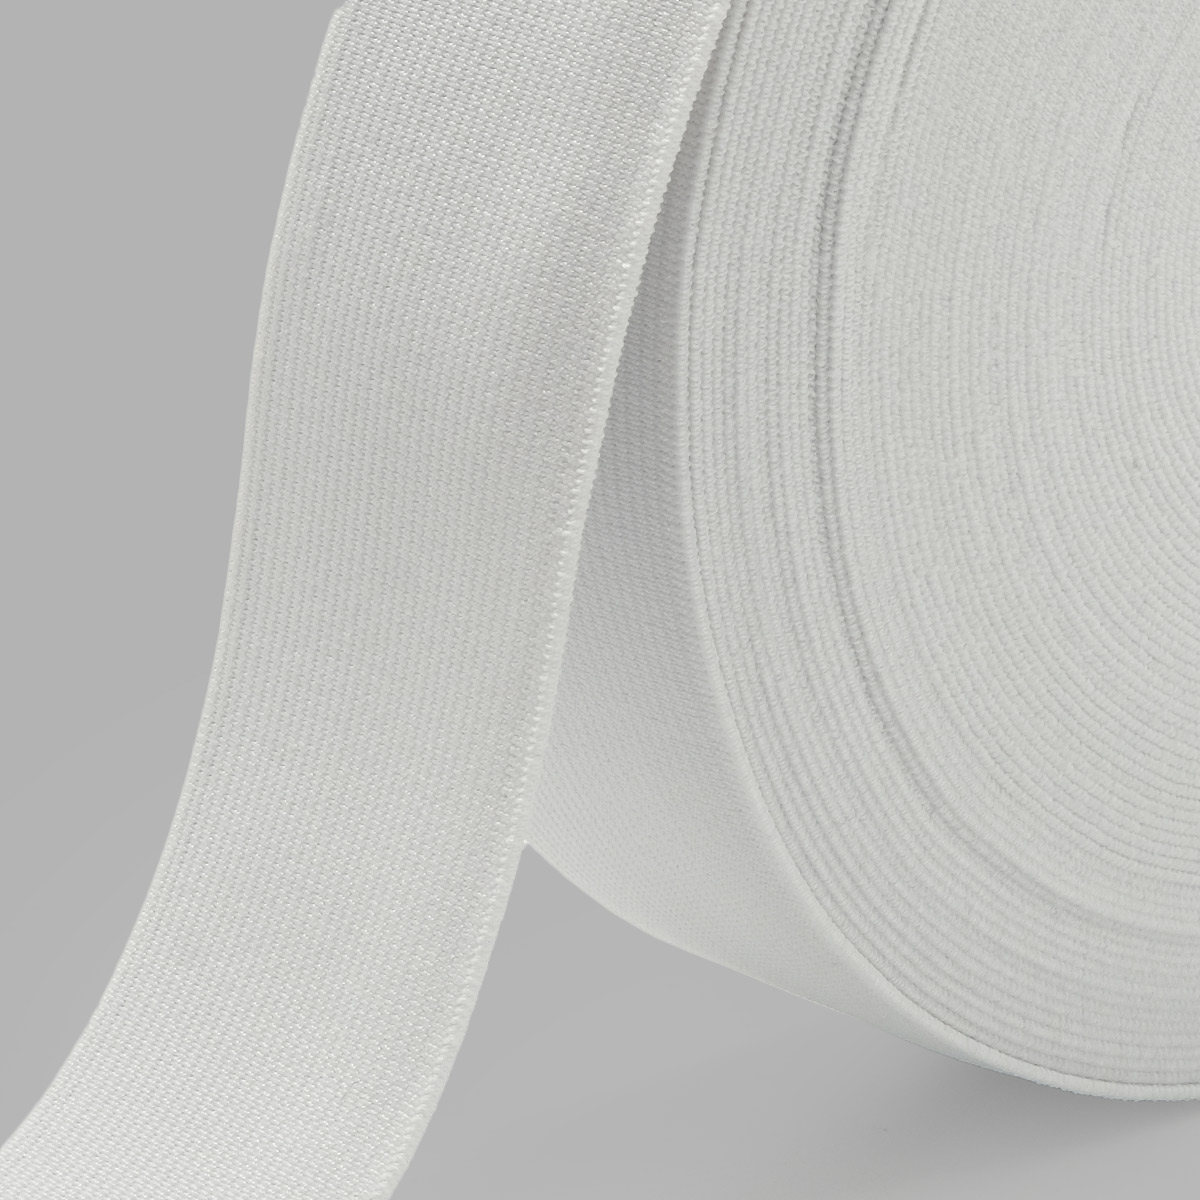 Лента Айрис тканая эластичная отделочная для шитья одежды 40 мм 20 м белая - фото 4